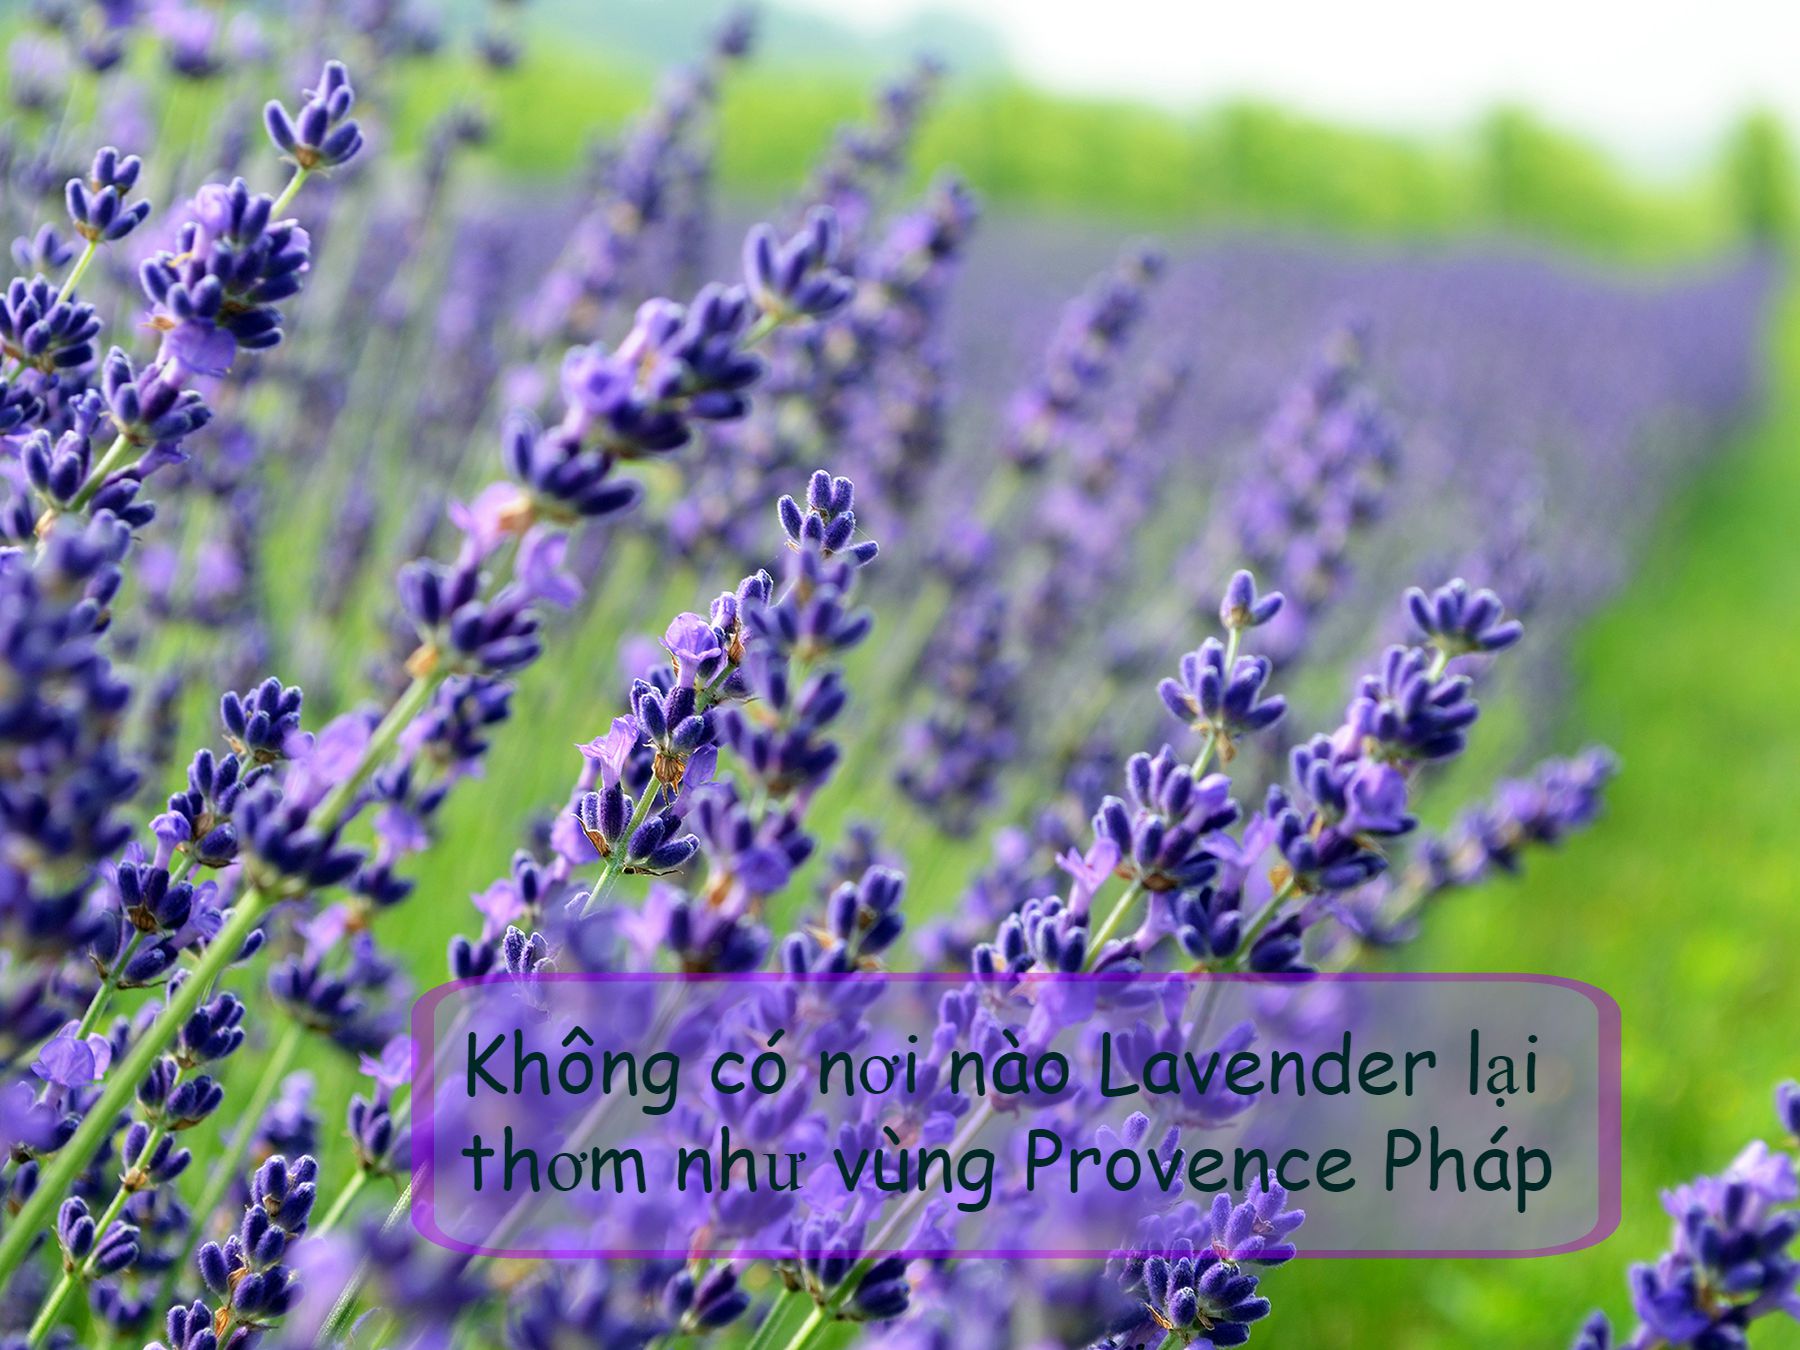 Đi tìm nơi bán sỉ hoa Lavender Pháp đáng tin cậy ở TP.HCM